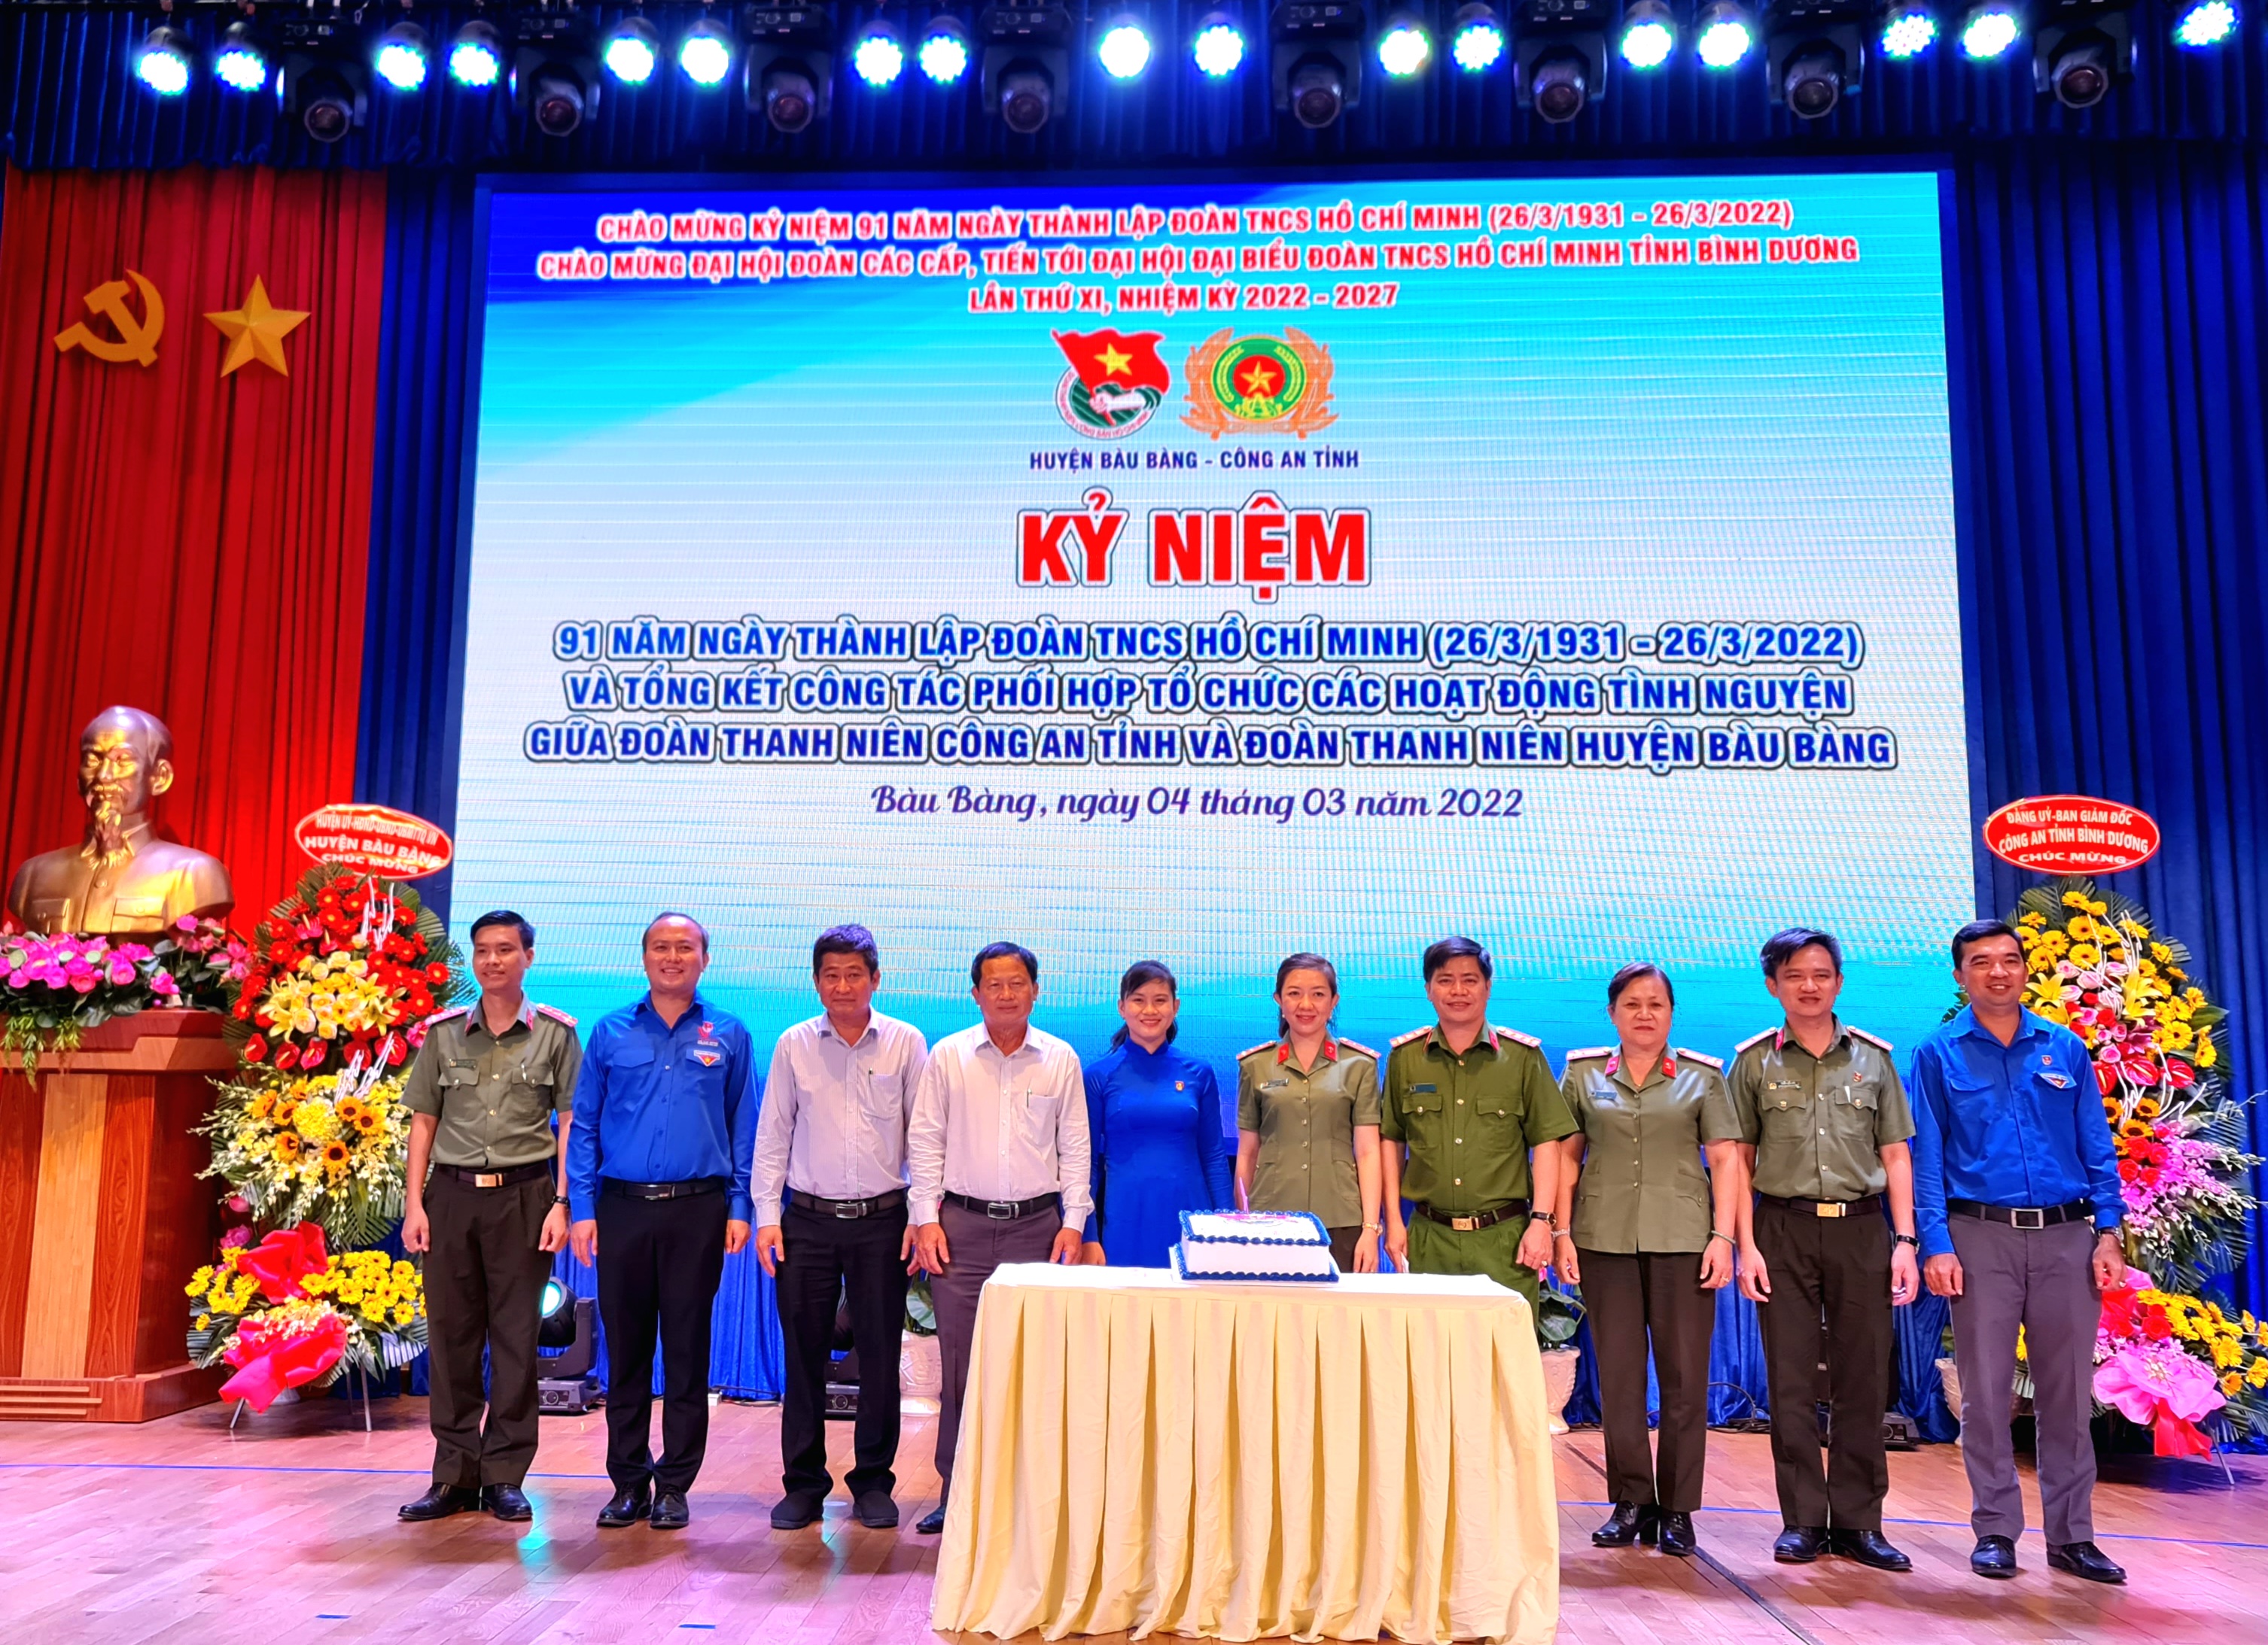 Tuổi trẻ Bàu Bàng - Công an tỉnh tổ chức kỷ niệm 91 năm Ngày thành lập Đoàn TNCS Hồ Chí Minh (26/3/1931 - 26/3/2022) và tổng kết công tác phối hợp các hoạt động tình nguyện trên địa bàn huyện năm 2022